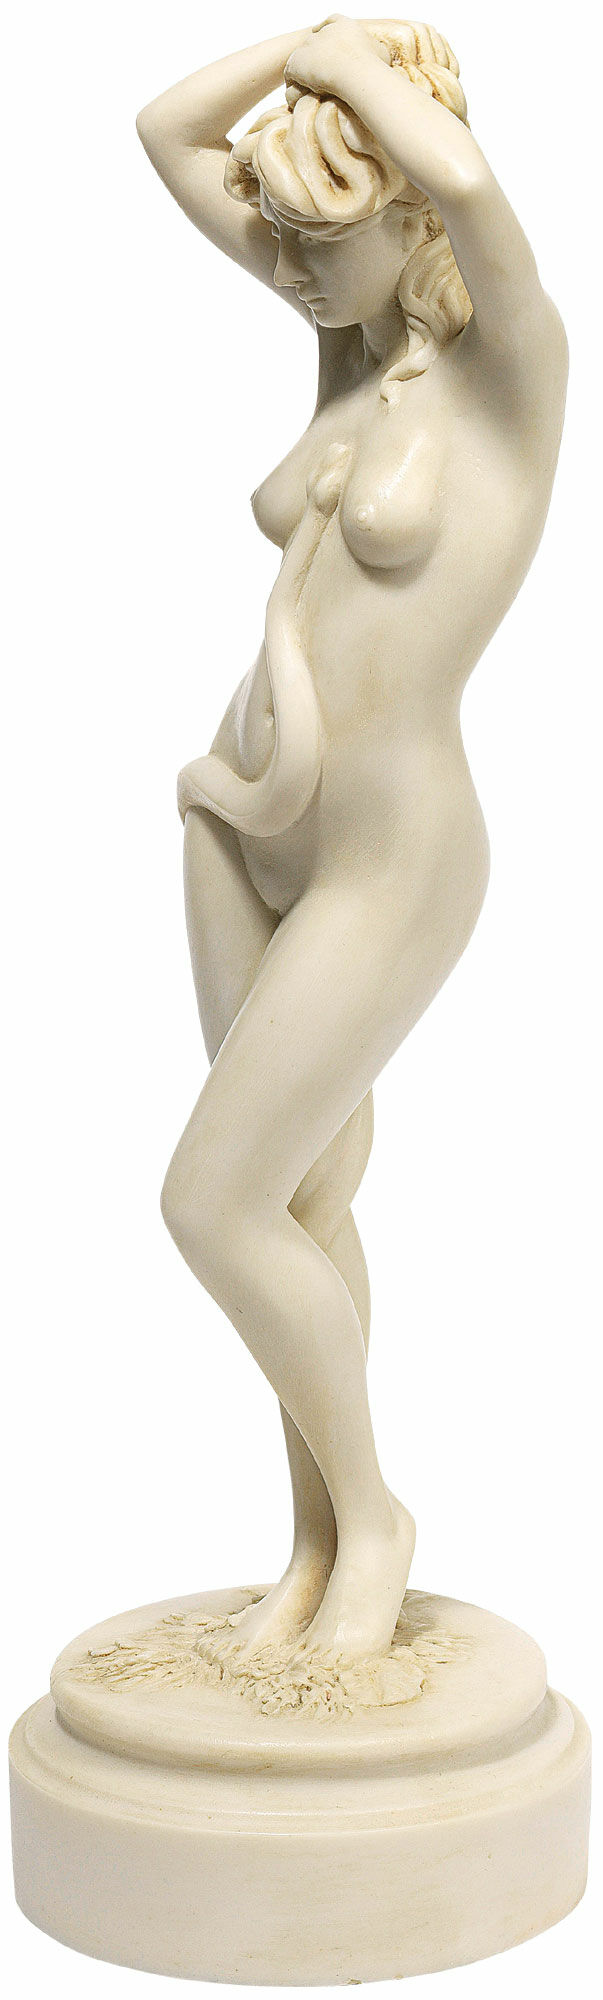 Sculpture "Eva", artificial marble version by Thomas Schöne